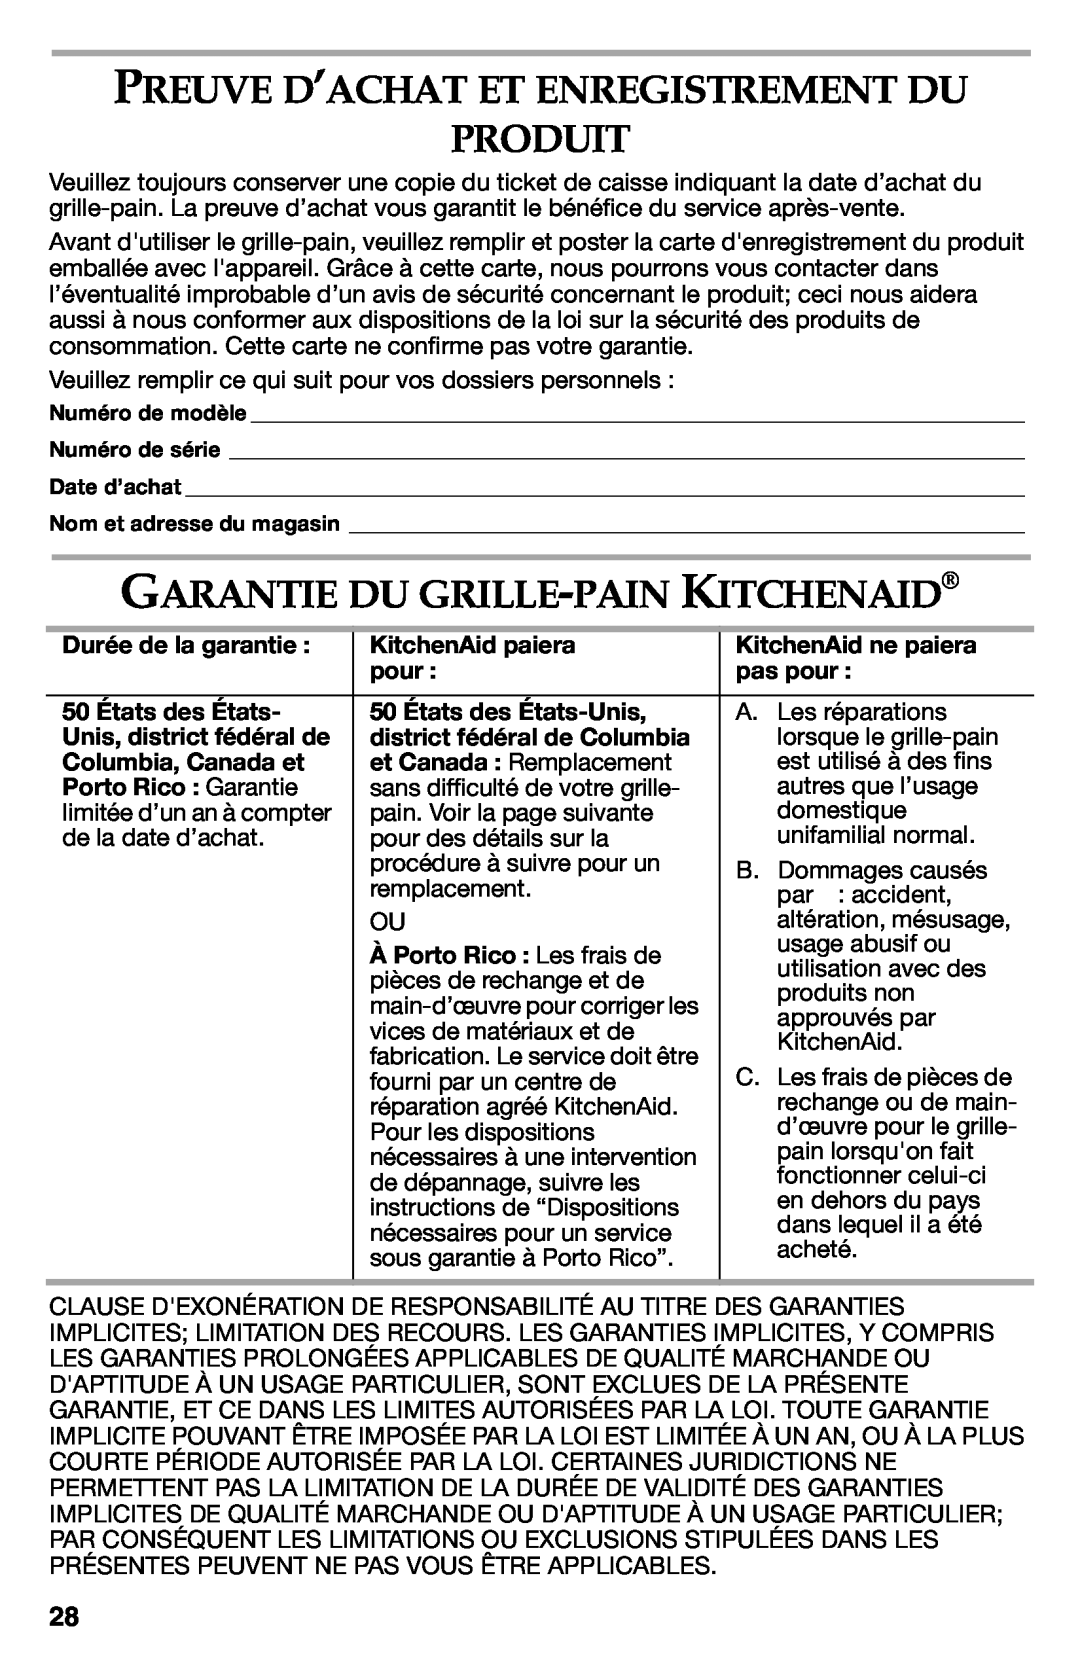 KitchenAid KMT423CU, KMT423OB, KMT223 manual Preuve D’Achat Et Enregistrement Du Produit, Garantie Du Grille-Pain Kitchenaid 